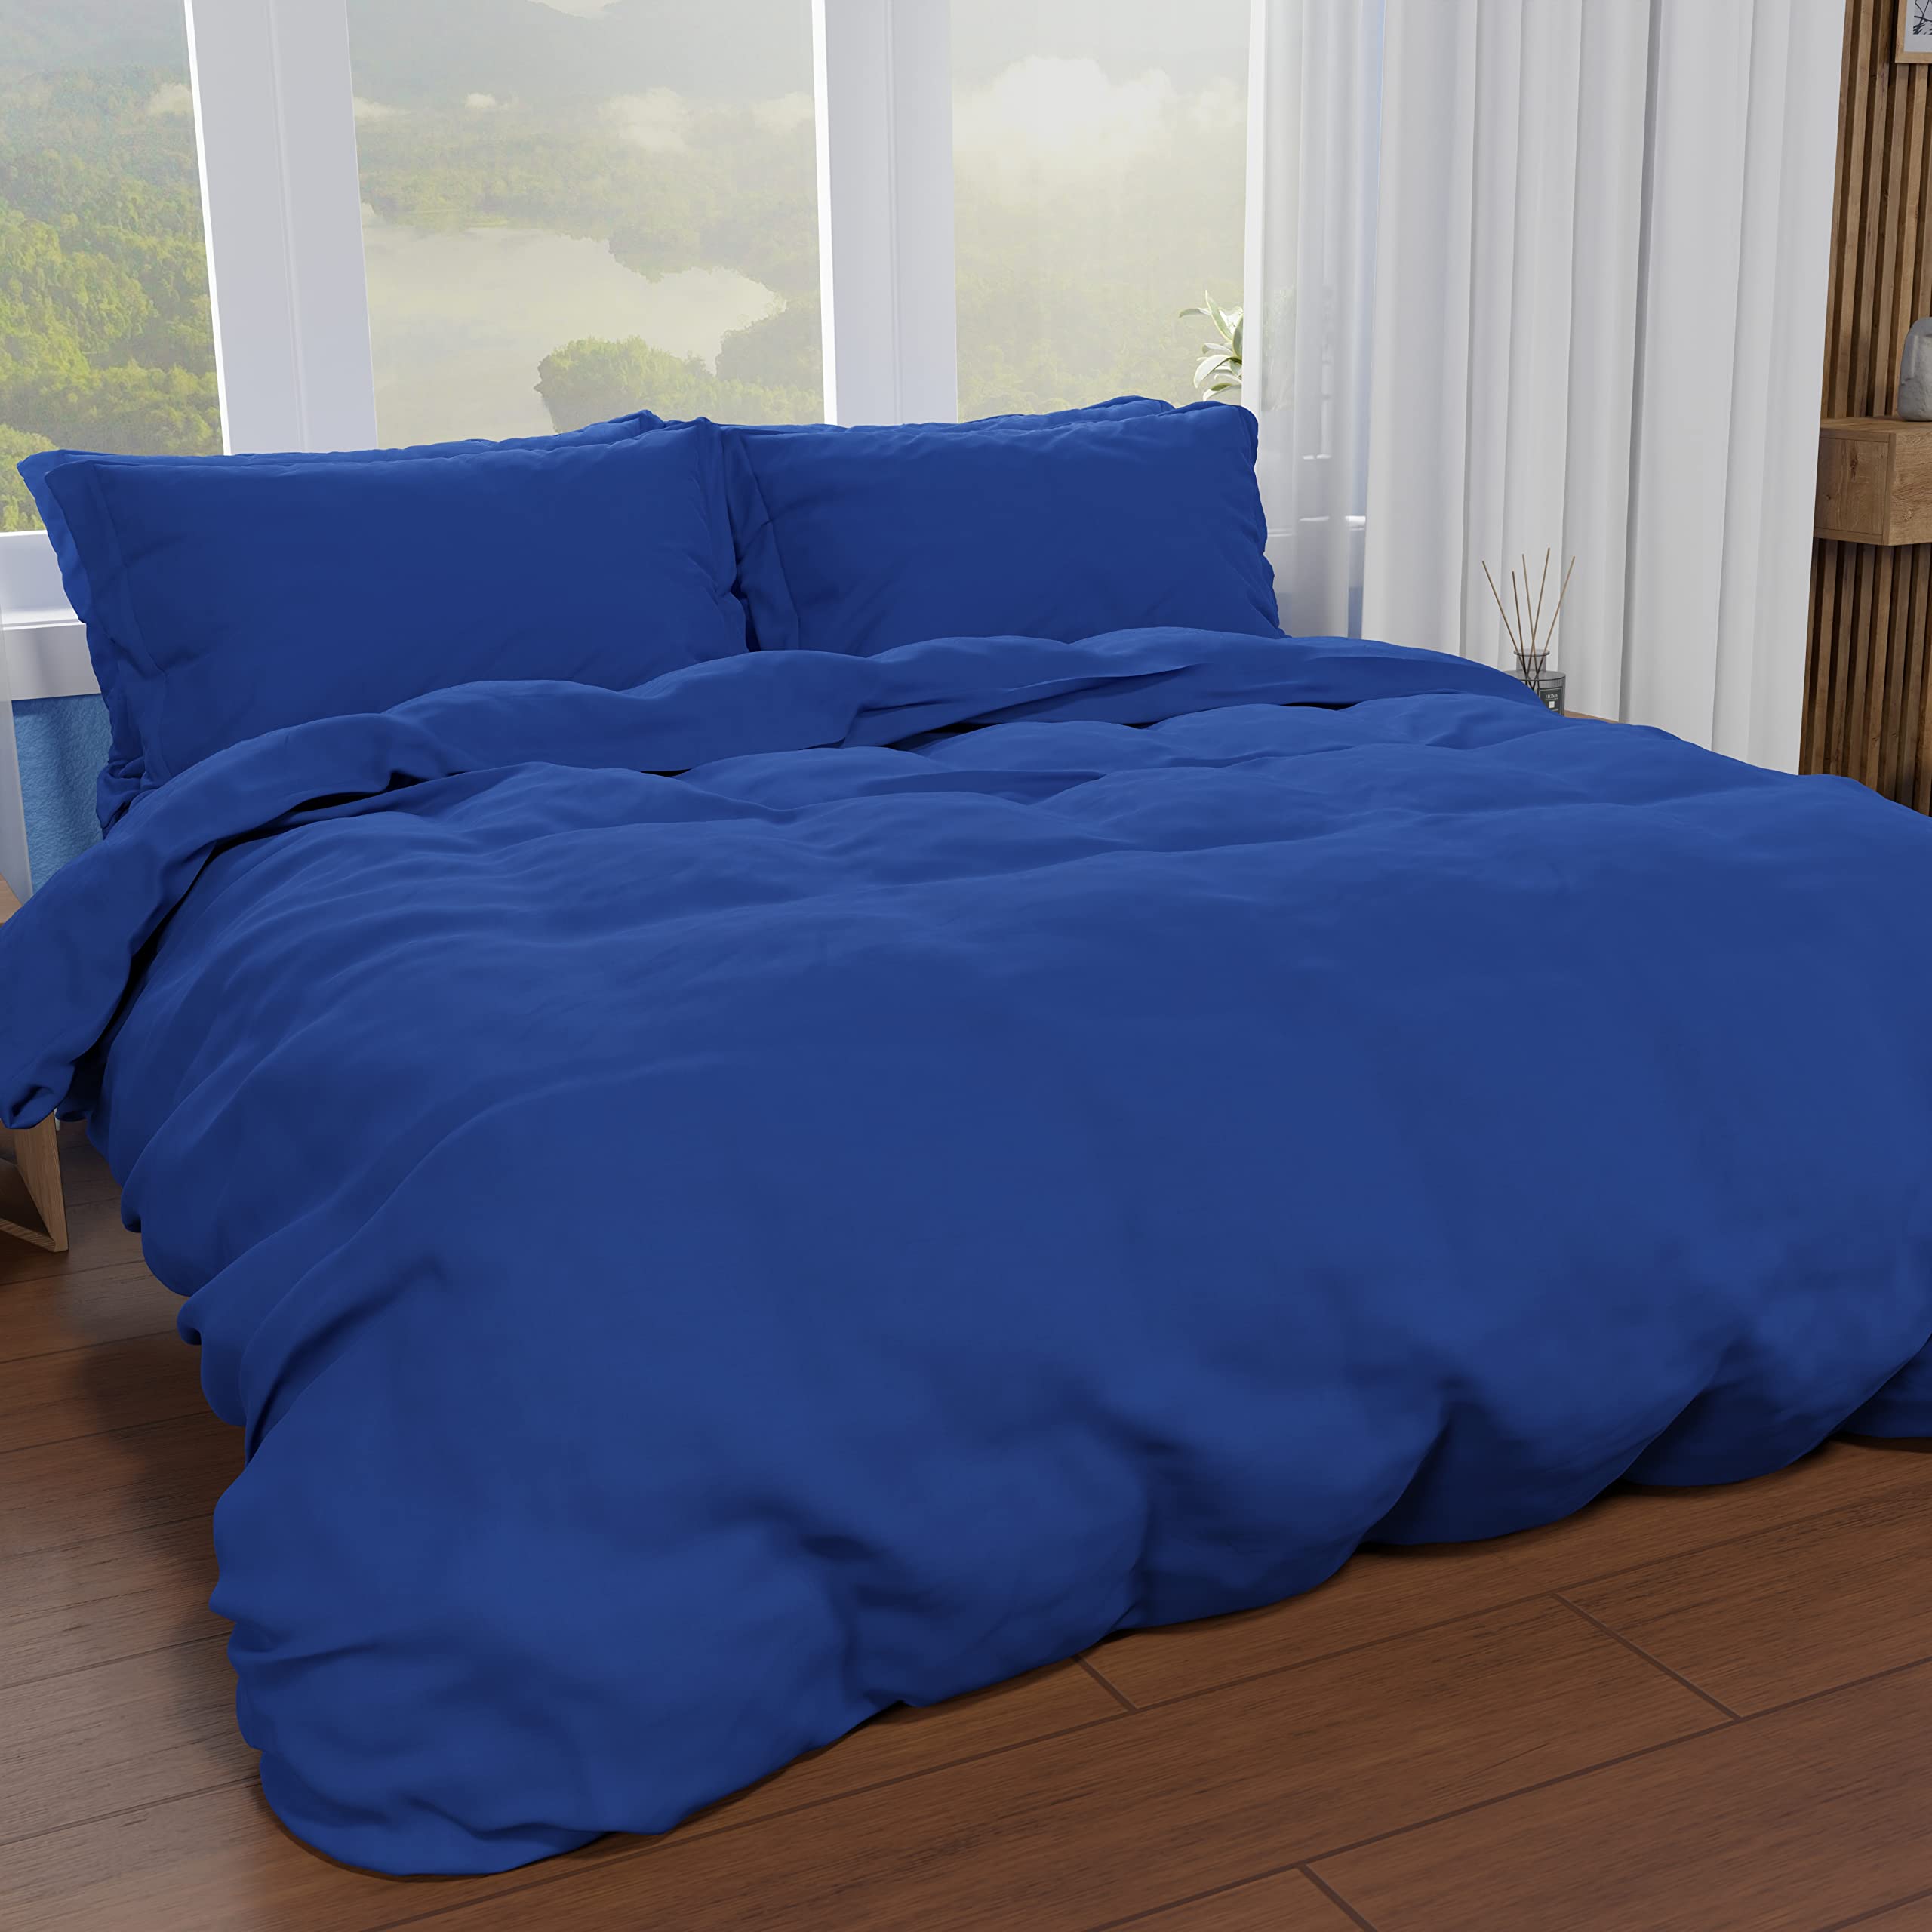 PETTI Artigiani Italiani - Bettbezug für Einzelbett, Bettbezug und Kissenbezüge aus Mikrofaser, einfarbig, elektrisch, 100% Made in Italy